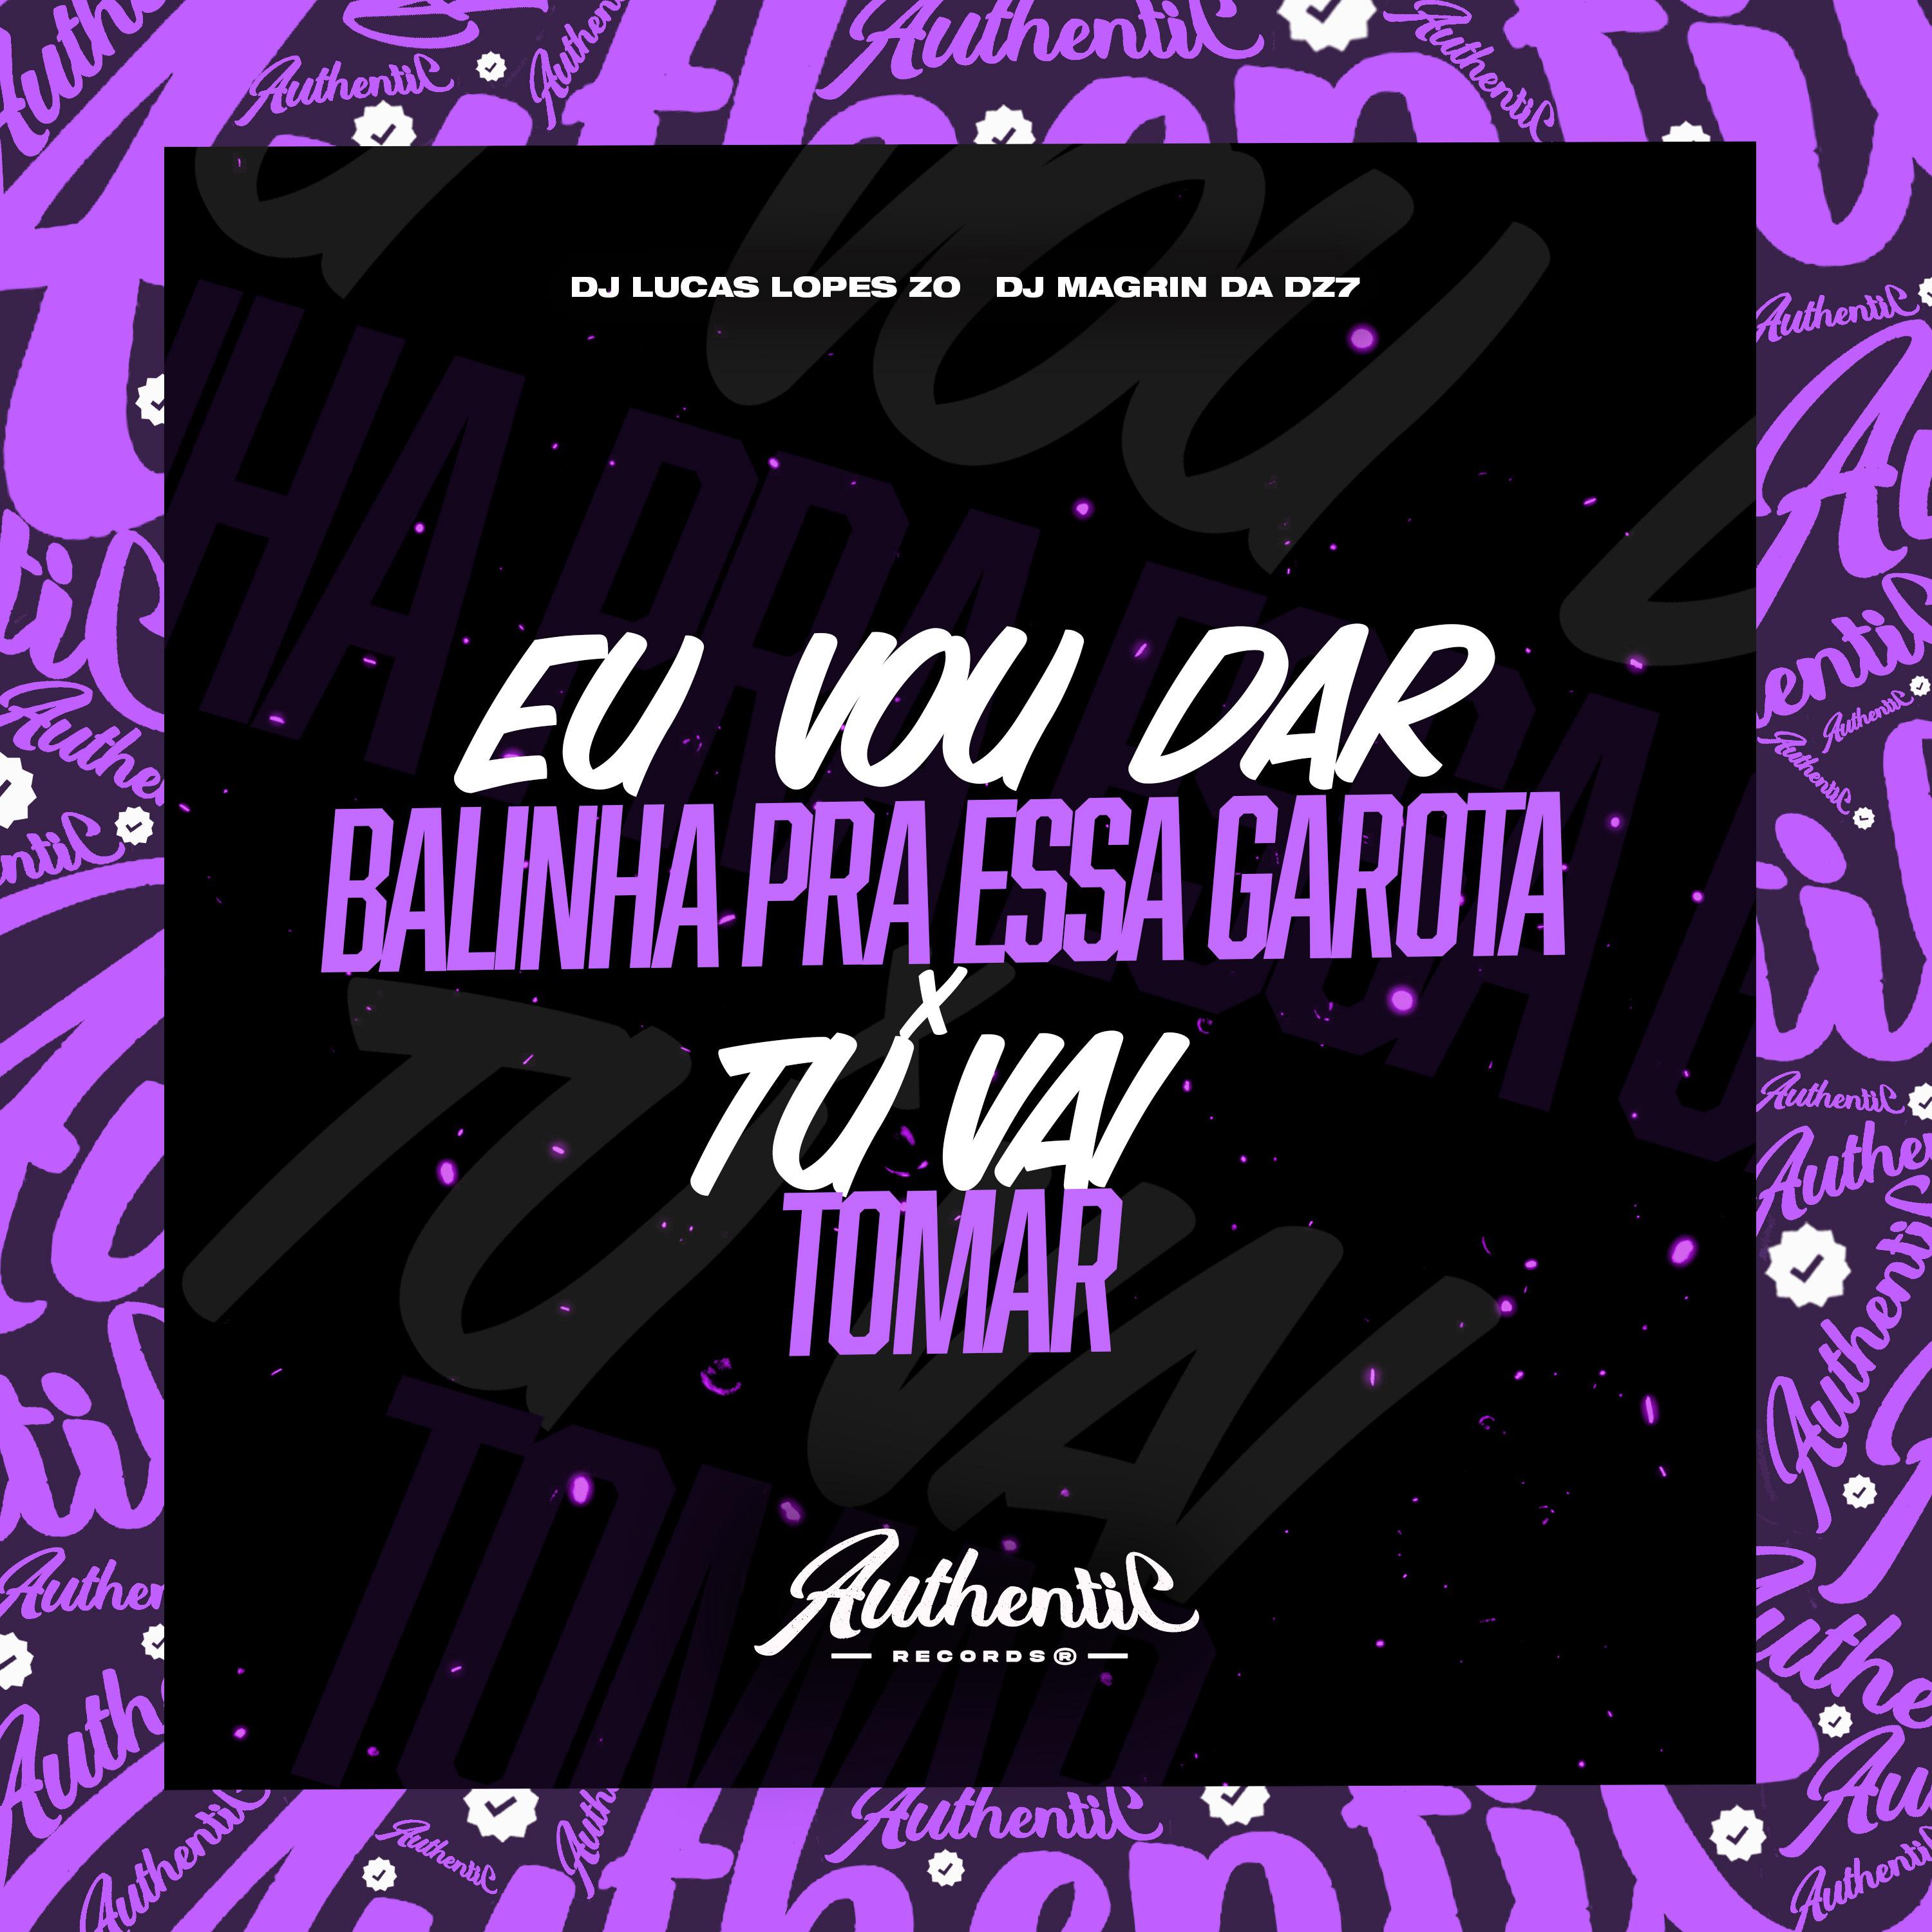 Постер альбома Eu Vou Dar Balinha pra Essa Garota X Tu Vai Tomar